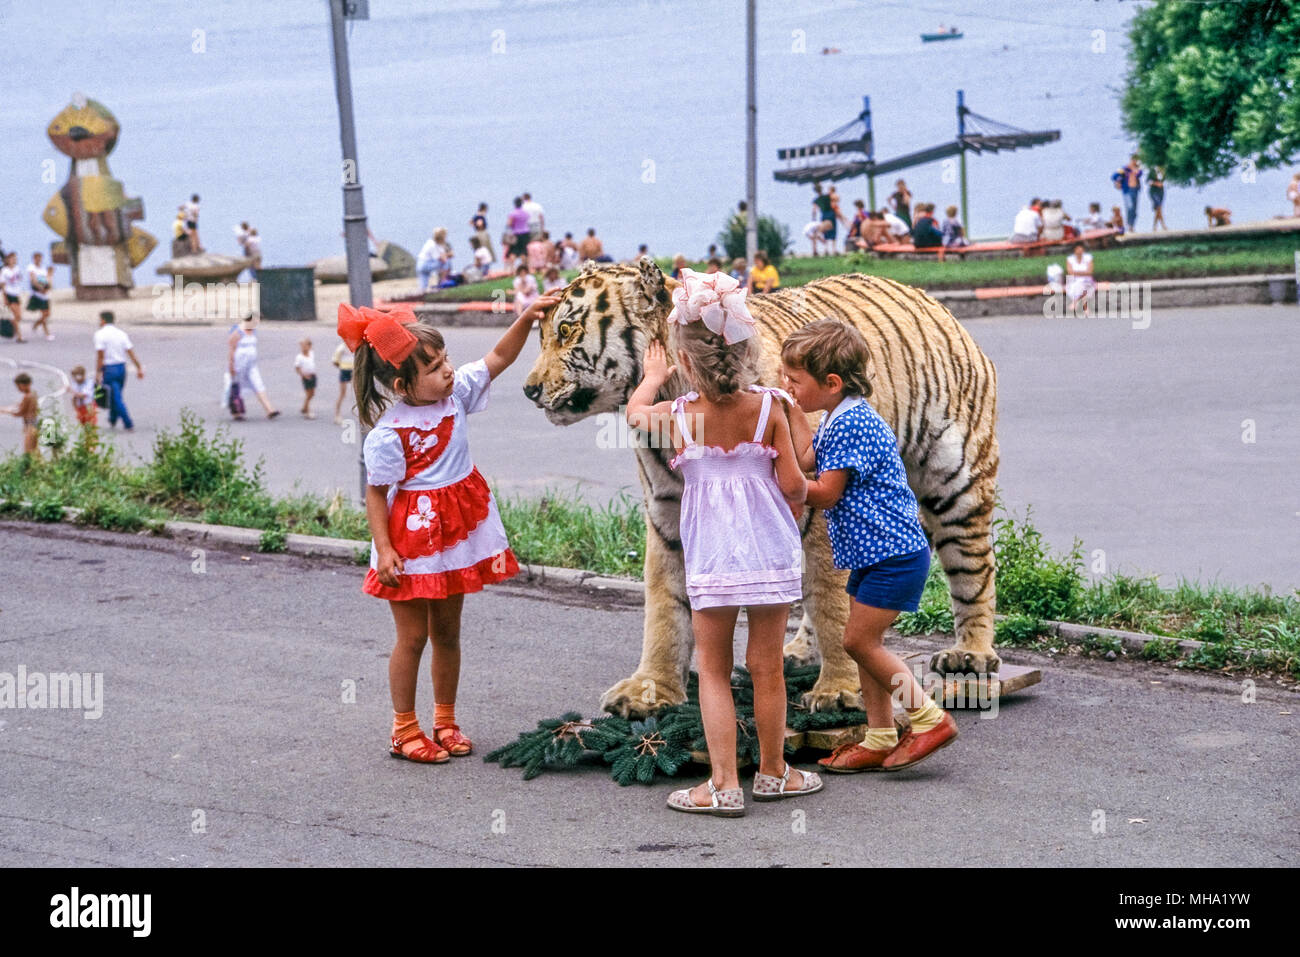 Image tigre siberien farcies, tués par des braconniers, utilisé par le photographe russe pour gagner de l'argent en faisant payer les parents pour avoir leurs enfants posent avec les morts t Banque D'Images